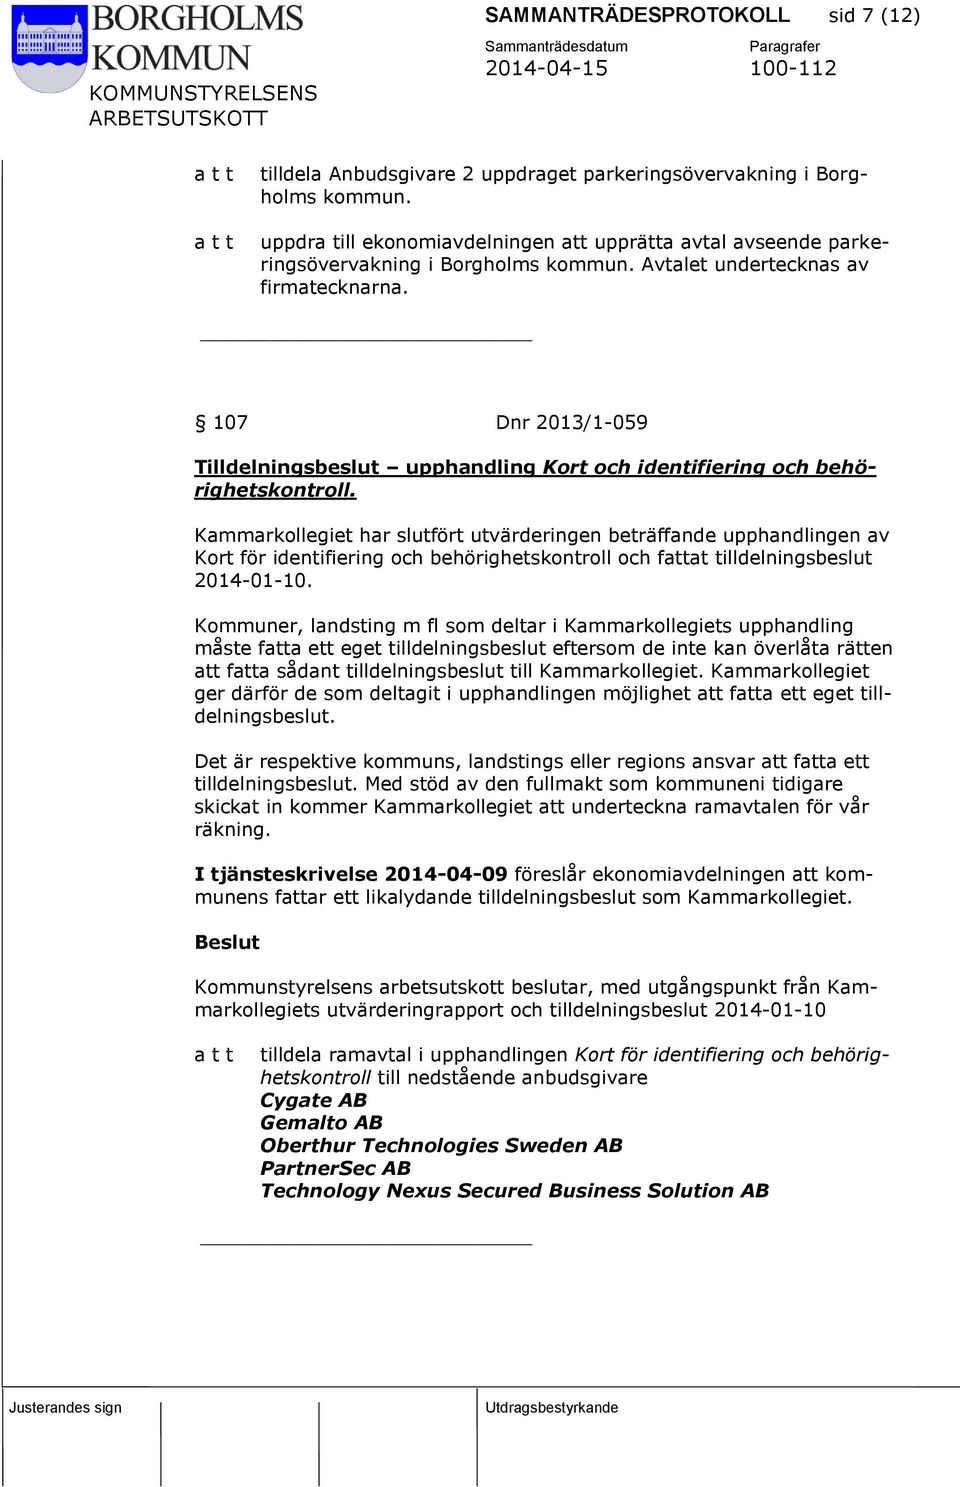 107 Dnr 2013/1-059 Tilldelningsbeslut upphandling Kort och identifiering och behörighetskontroll.